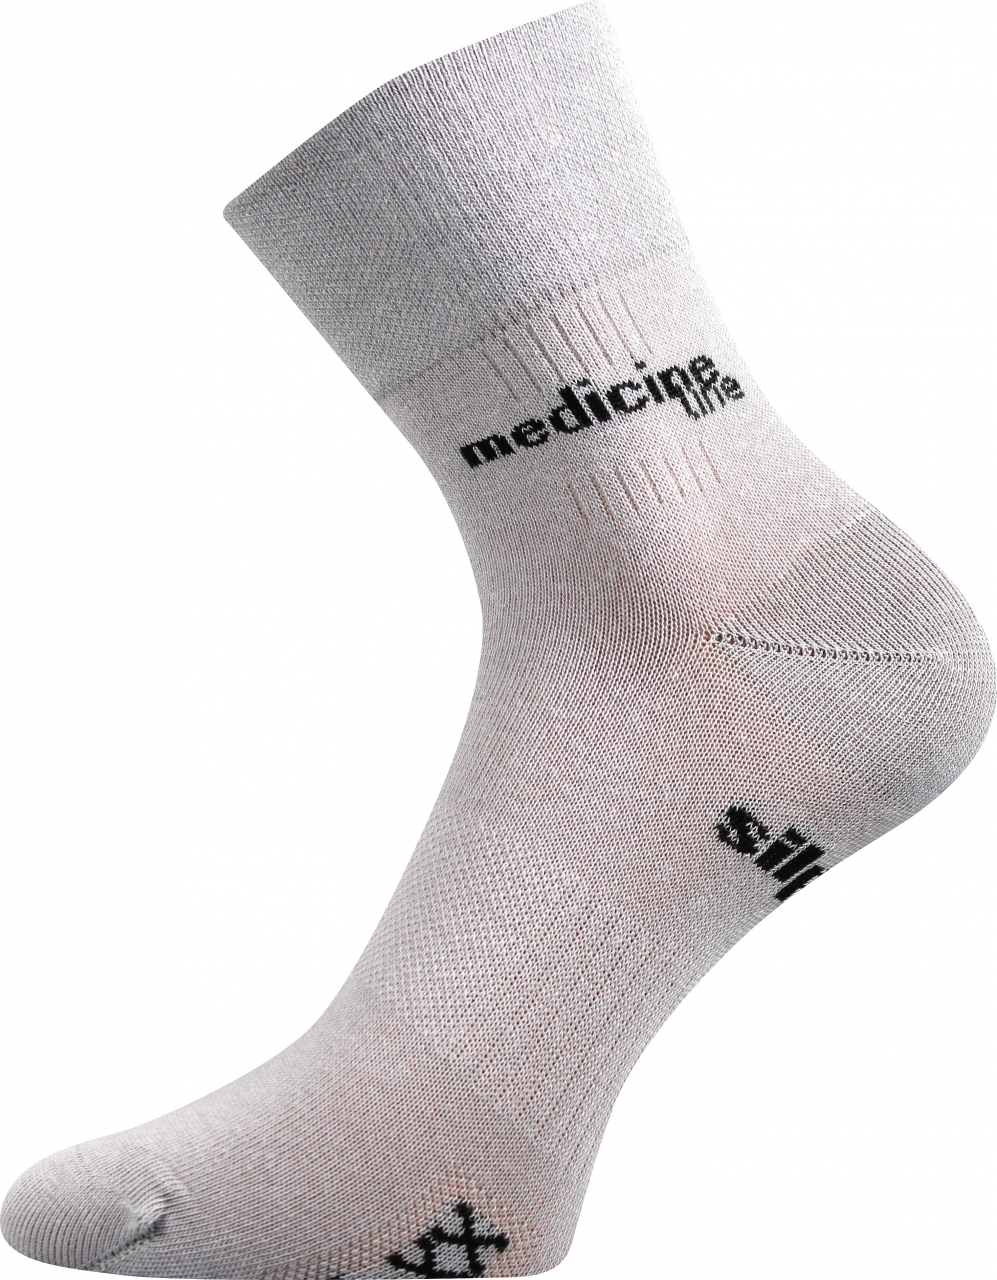 Ponožky zdravotní Mission Medicine - světle šedé, 43-46